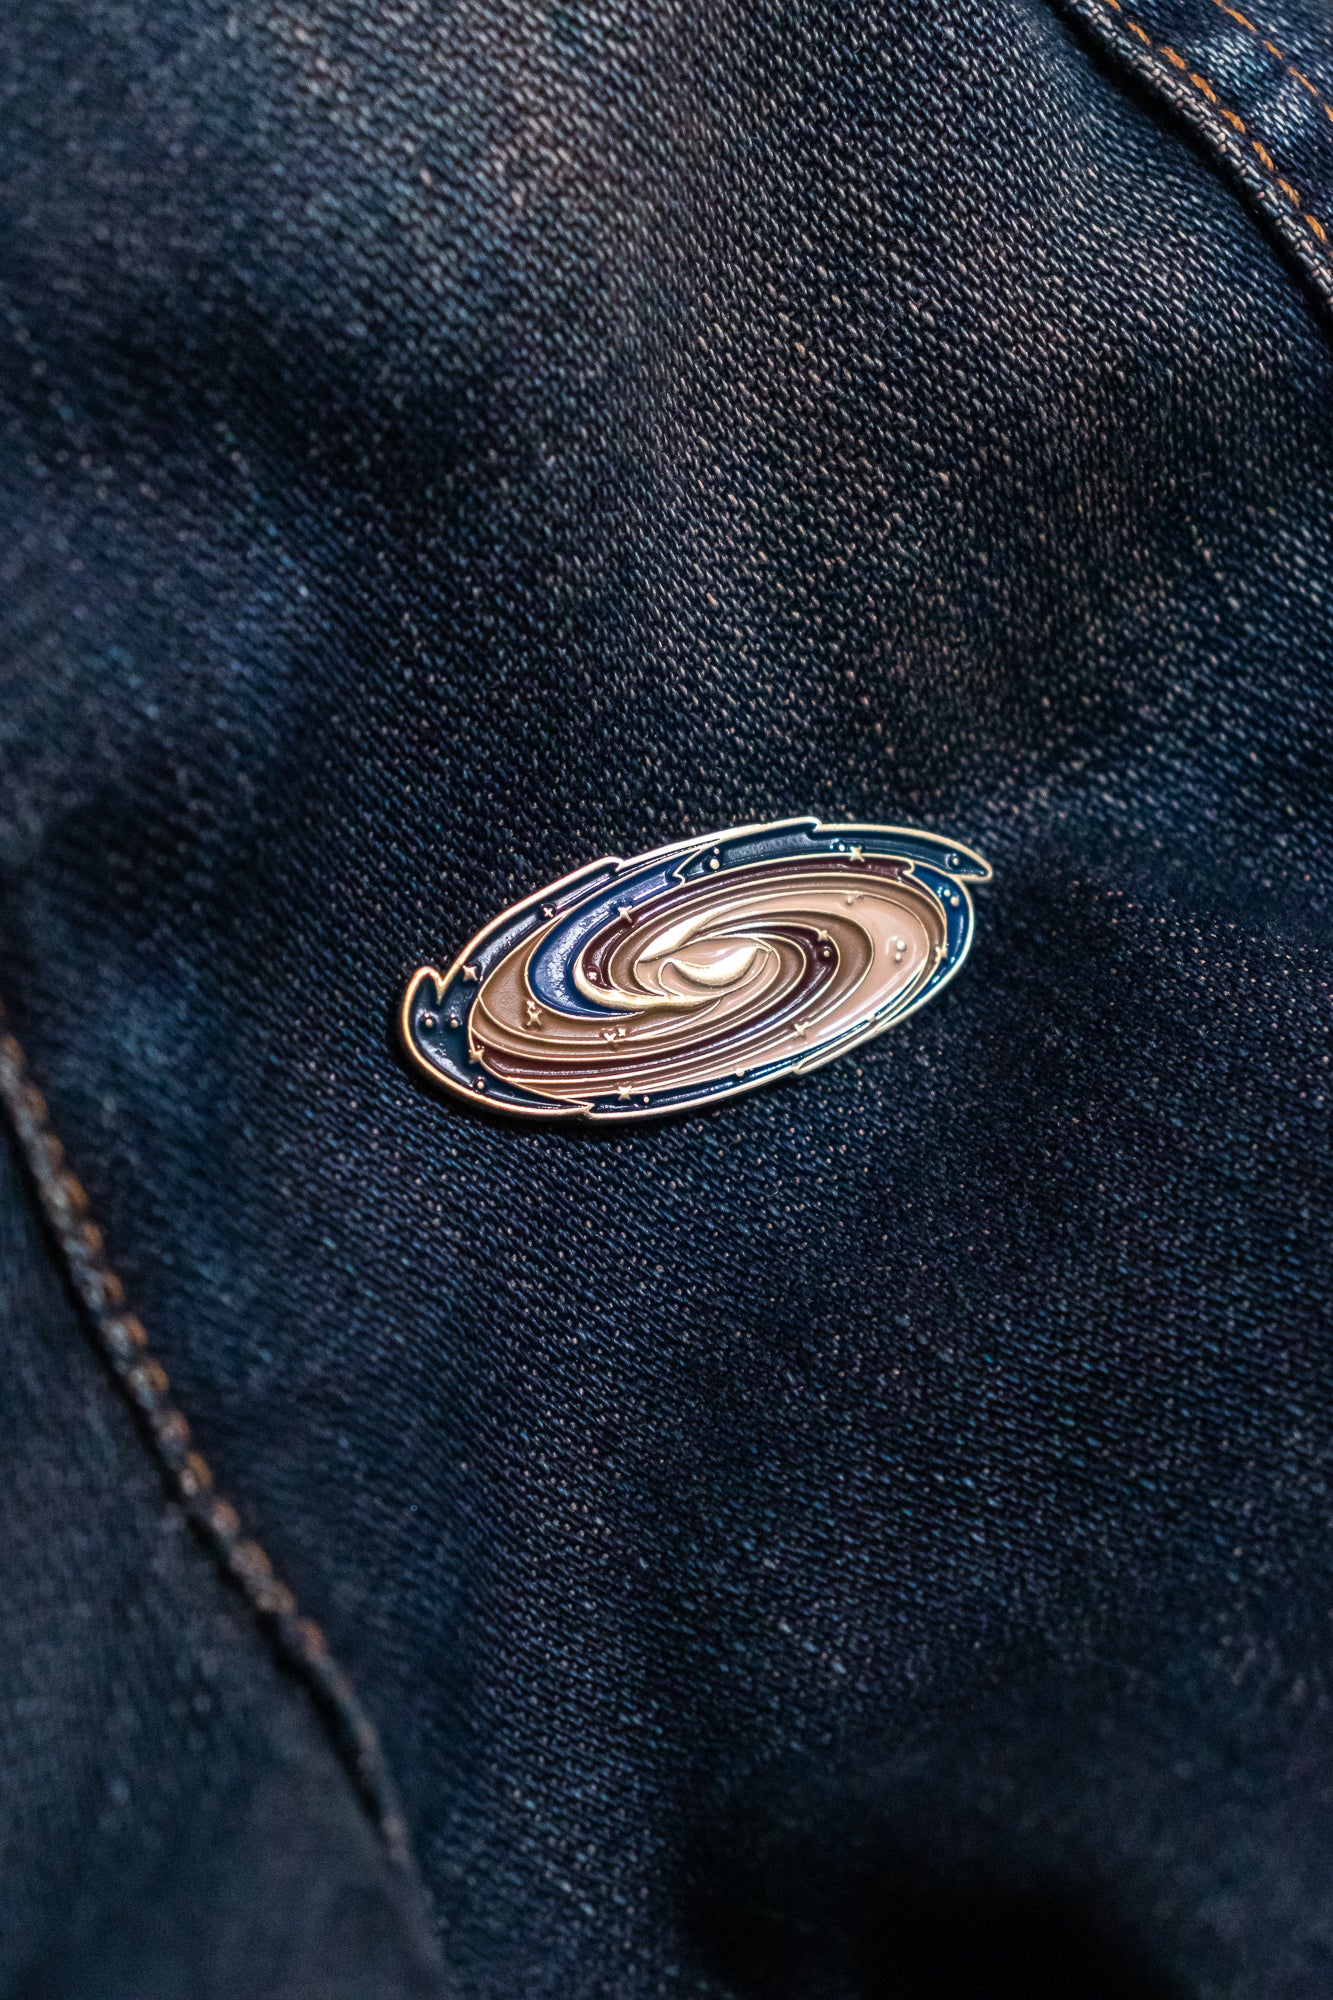 Andromeda Galaxy Pin